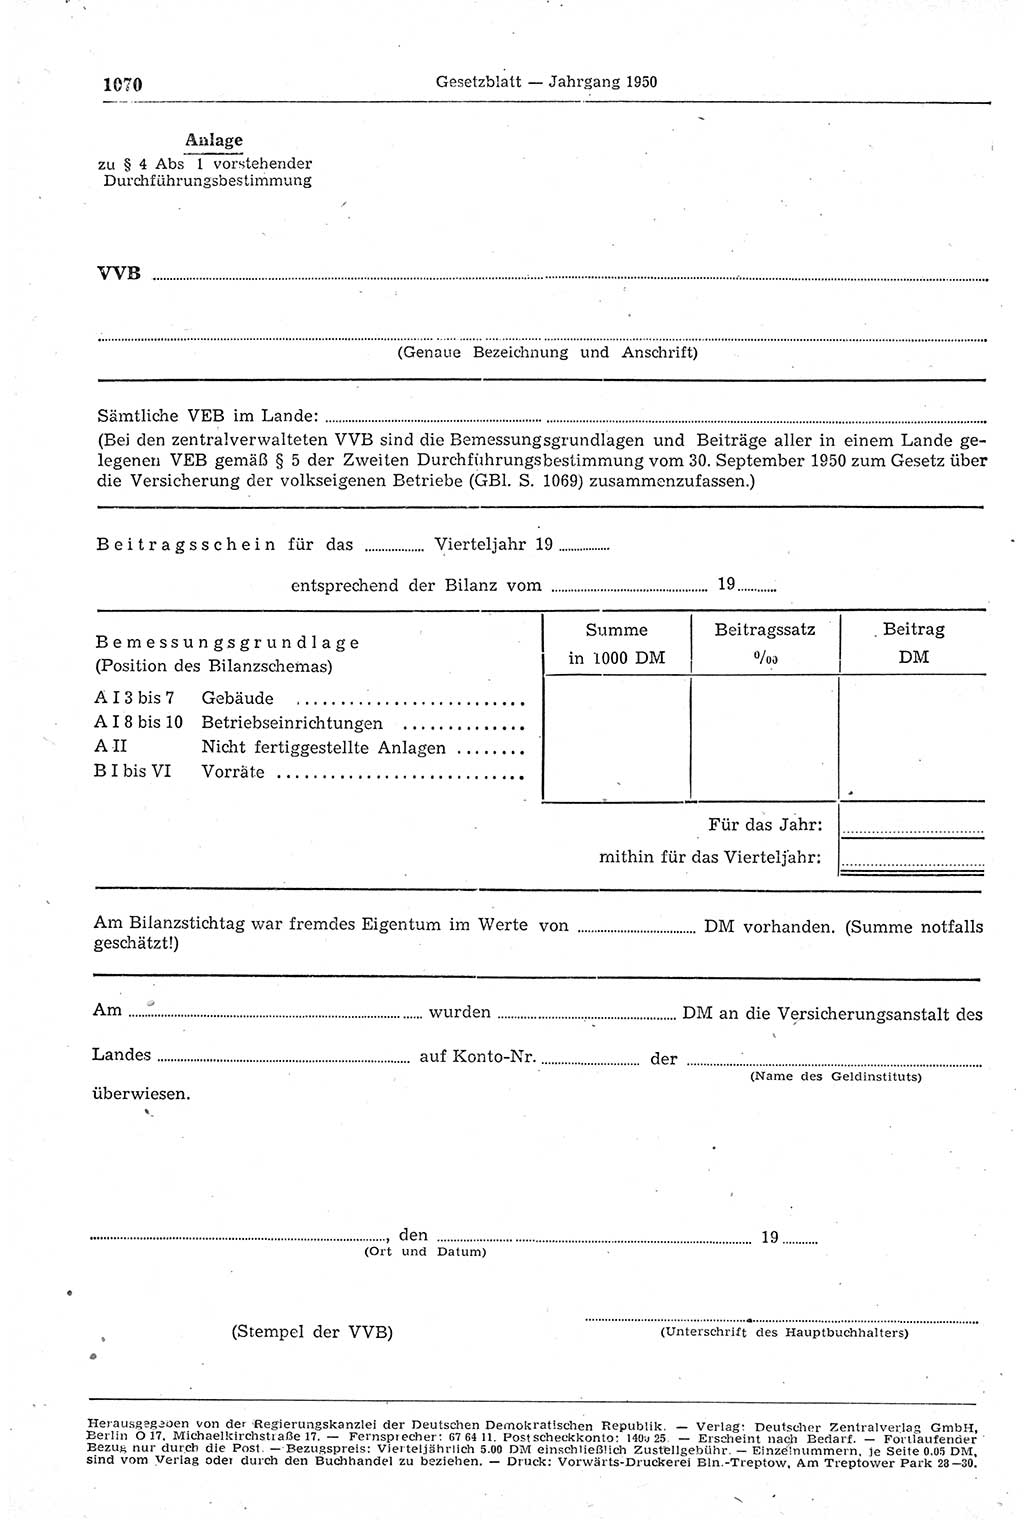 Gesetzblatt (GBl.) der Deutschen Demokratischen Republik (DDR) 1950, Seite 1070 (GBl. DDR 1950, S. 1070)